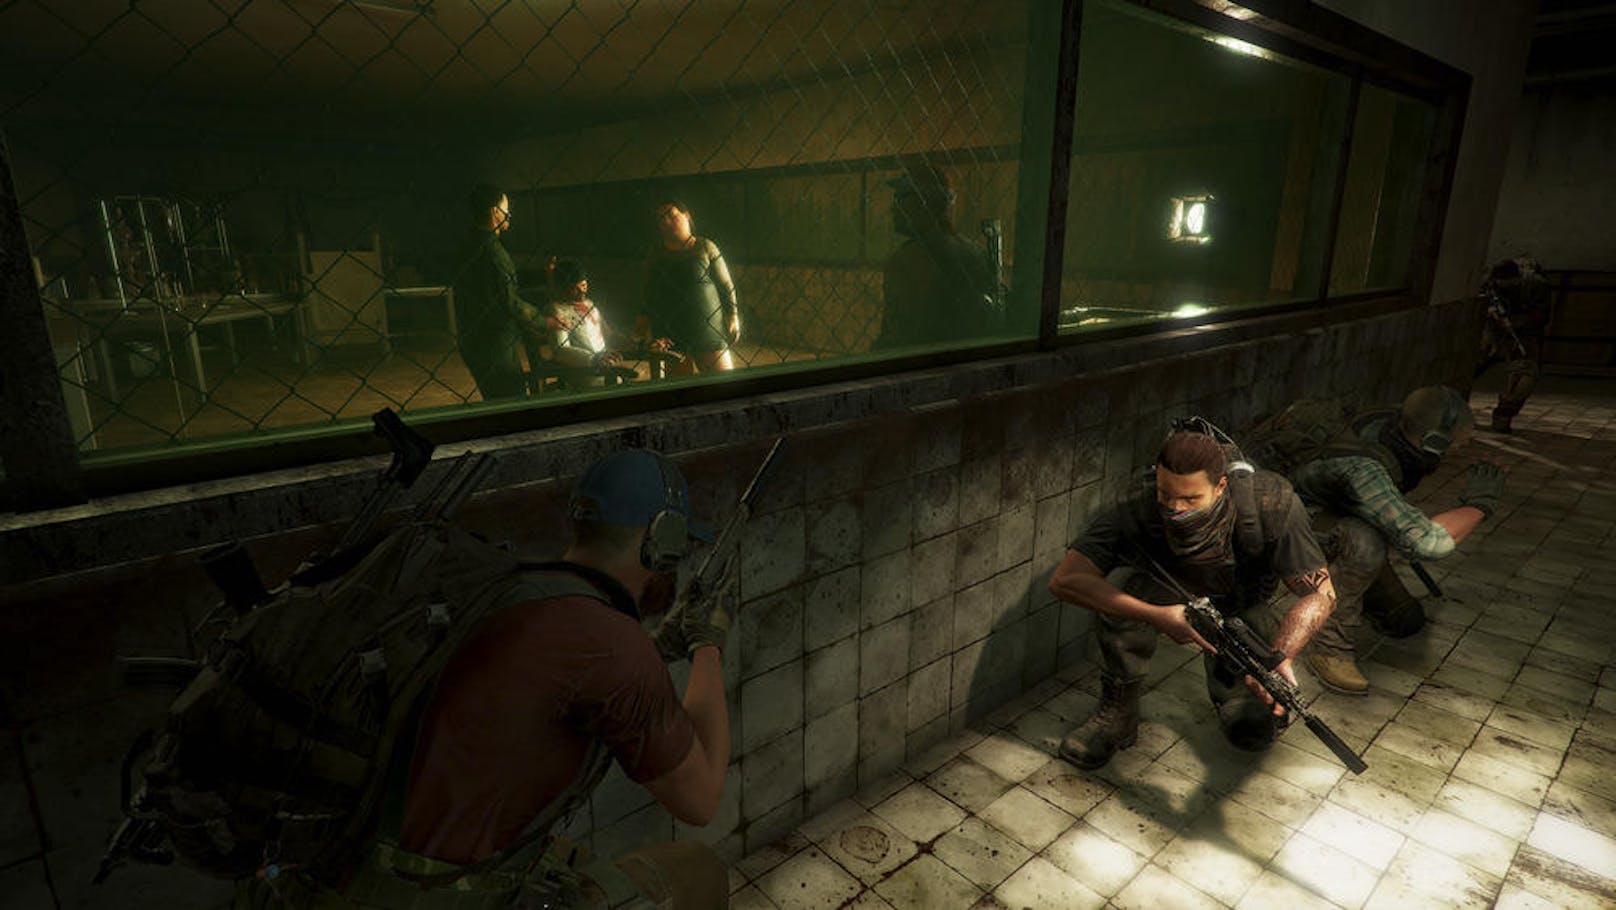 Ubisoft gab heute bekannt, dass Tom Clancys Ghost Recon Wildlands vom 20. bis zum 23. September ein Gratis-Wochenende für PlayStation 4, Xbox One und PC anbietet. Während des Gratis-Wochenendes haben die Spieler vollen Zugriff auf die Inhalte des Basisspiels, sowie auf Ghost War PvP und thematische Spezial-PvE-Missionen. Spieler, die nach dem Gratis-Wochenende das Spiel erwerben wollen, haben die Wahl zwischen zwei neuen Versionen, der Year 2 Gold Edition und der Ultimate Edition. Beide sind ab heute erhältlich.